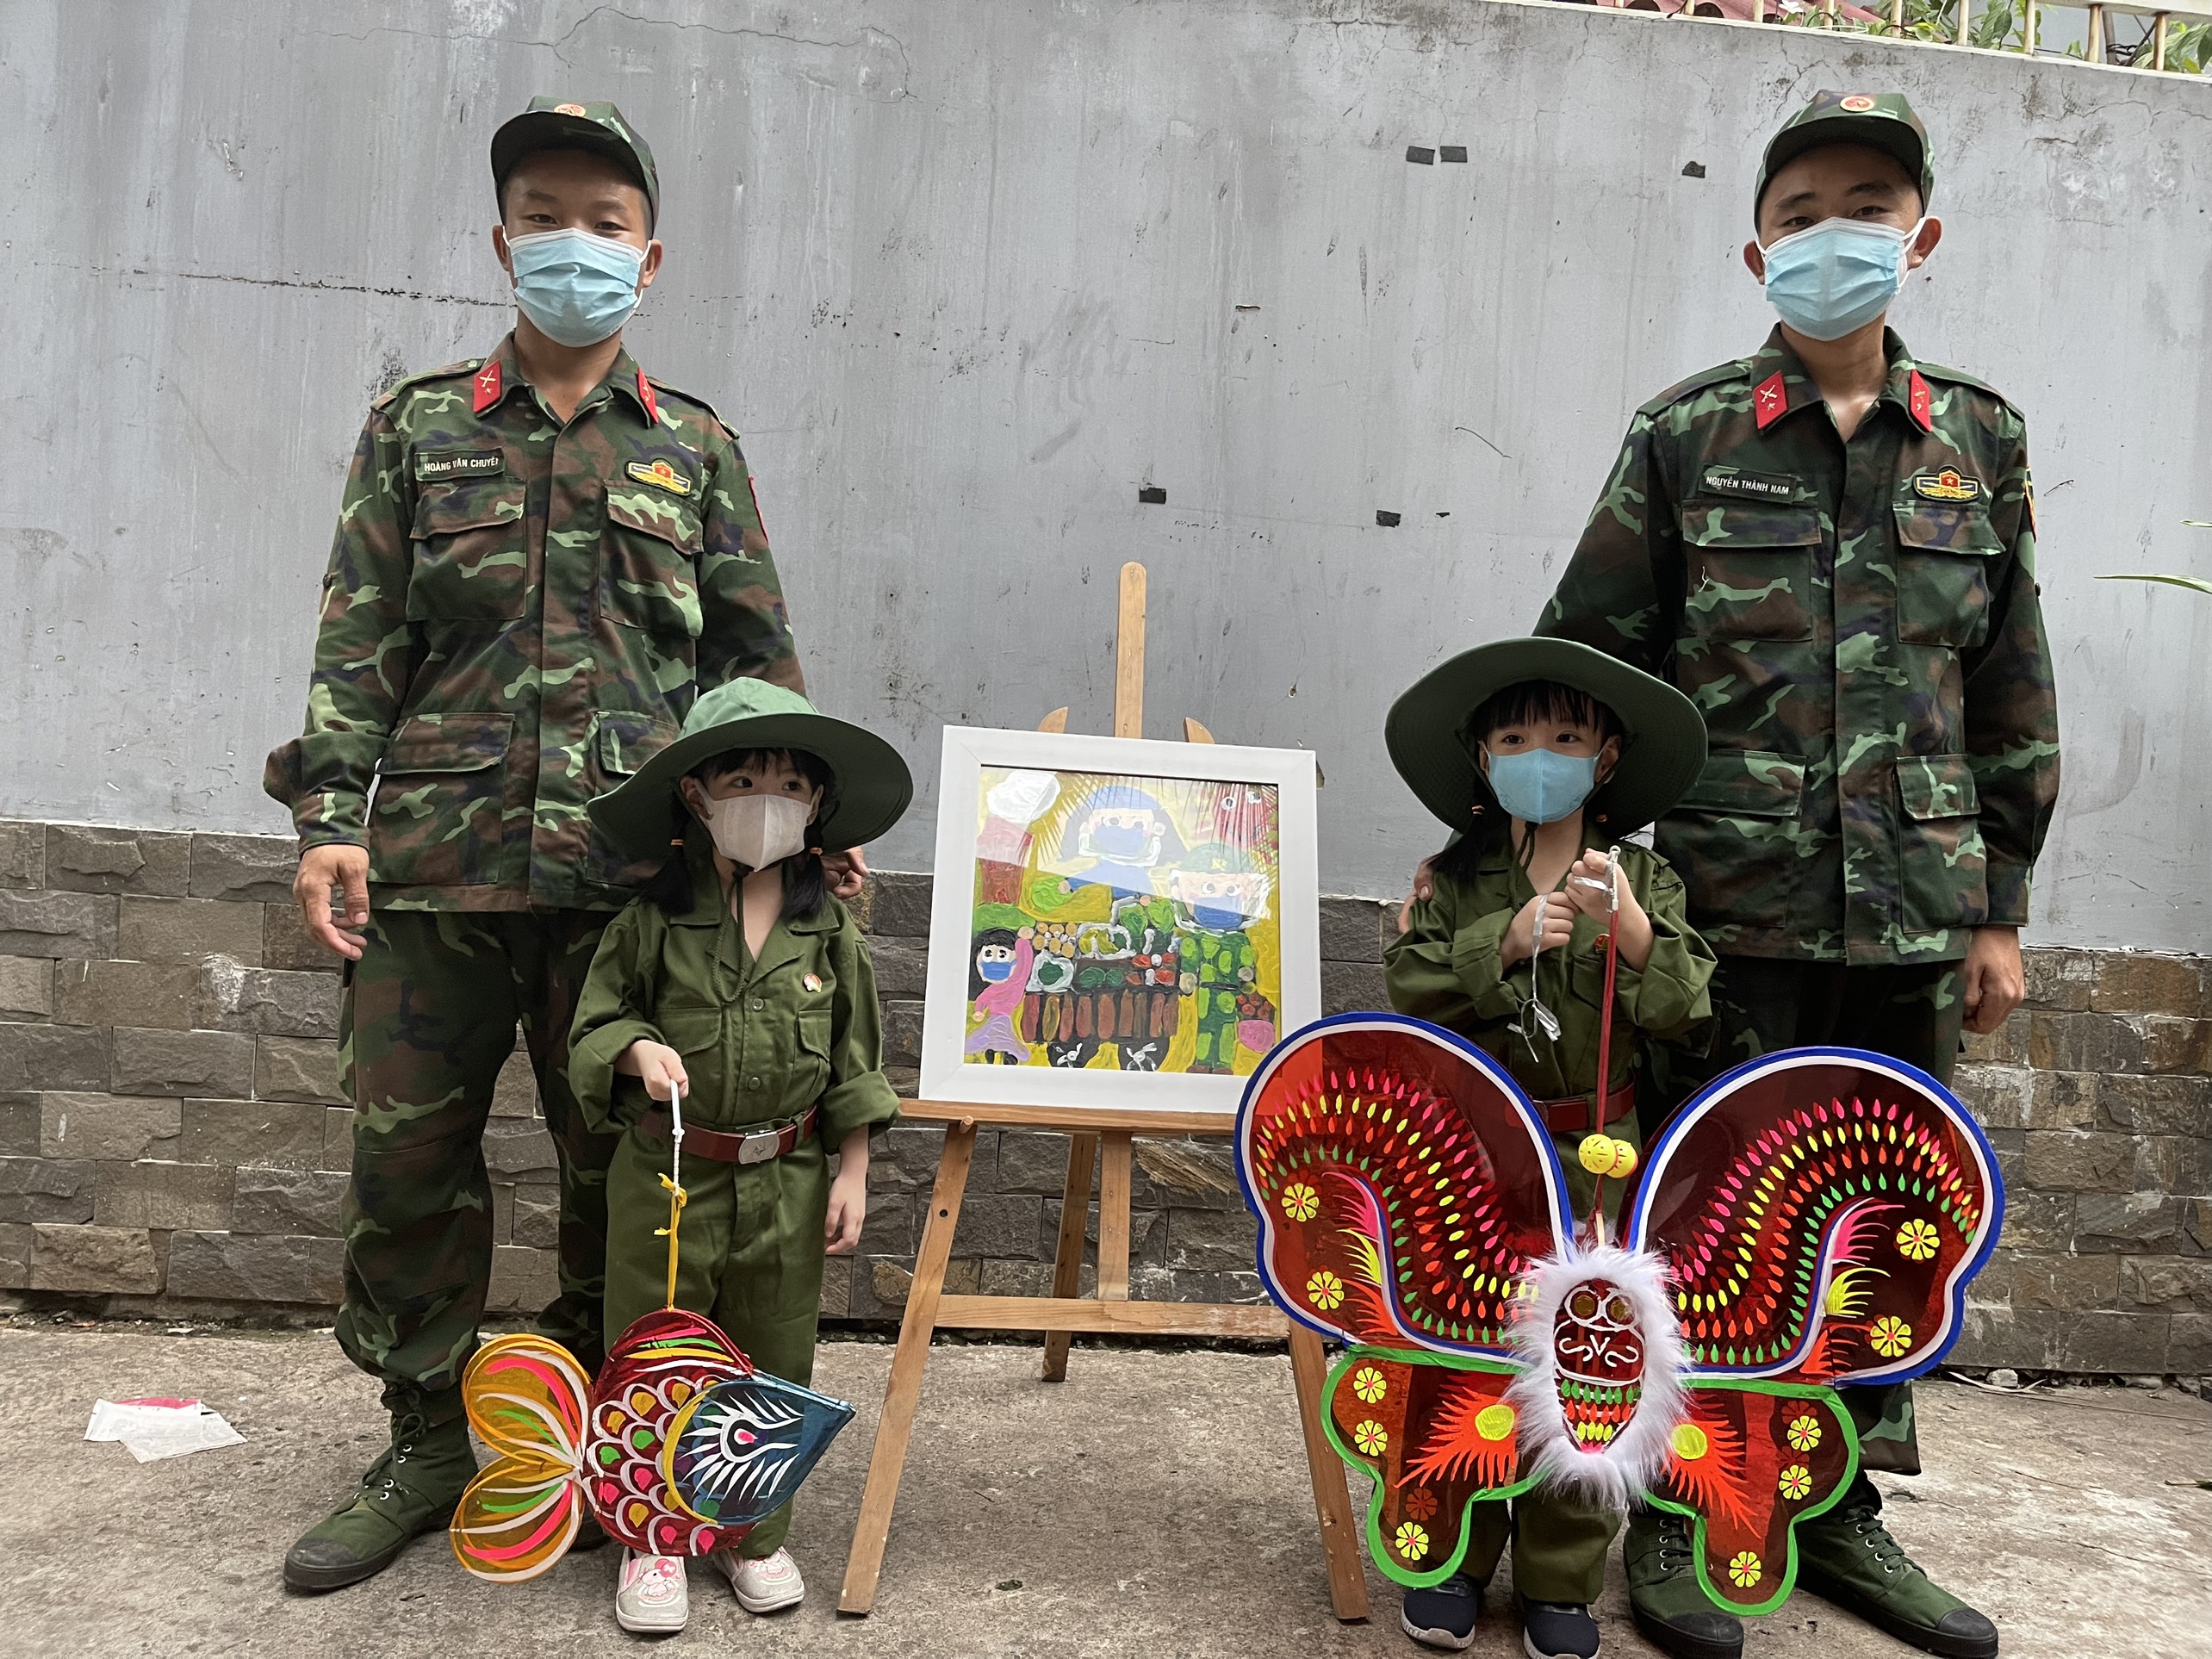 Em bé Sài Gòn vẽ tranh tặng chú bộ đội phát rau trong hẻm nhỏ - Bức tranh được vẽ bởi em bé Sài Gòn với tình cảm và sự chân thật được truyền tải rất tốt. Hãy xem hình ảnh liên quan để cảm nhận được sức mạnh và tình thương mà các em bé Việt Nam dành cho đội ngũ lính của chúng ta.